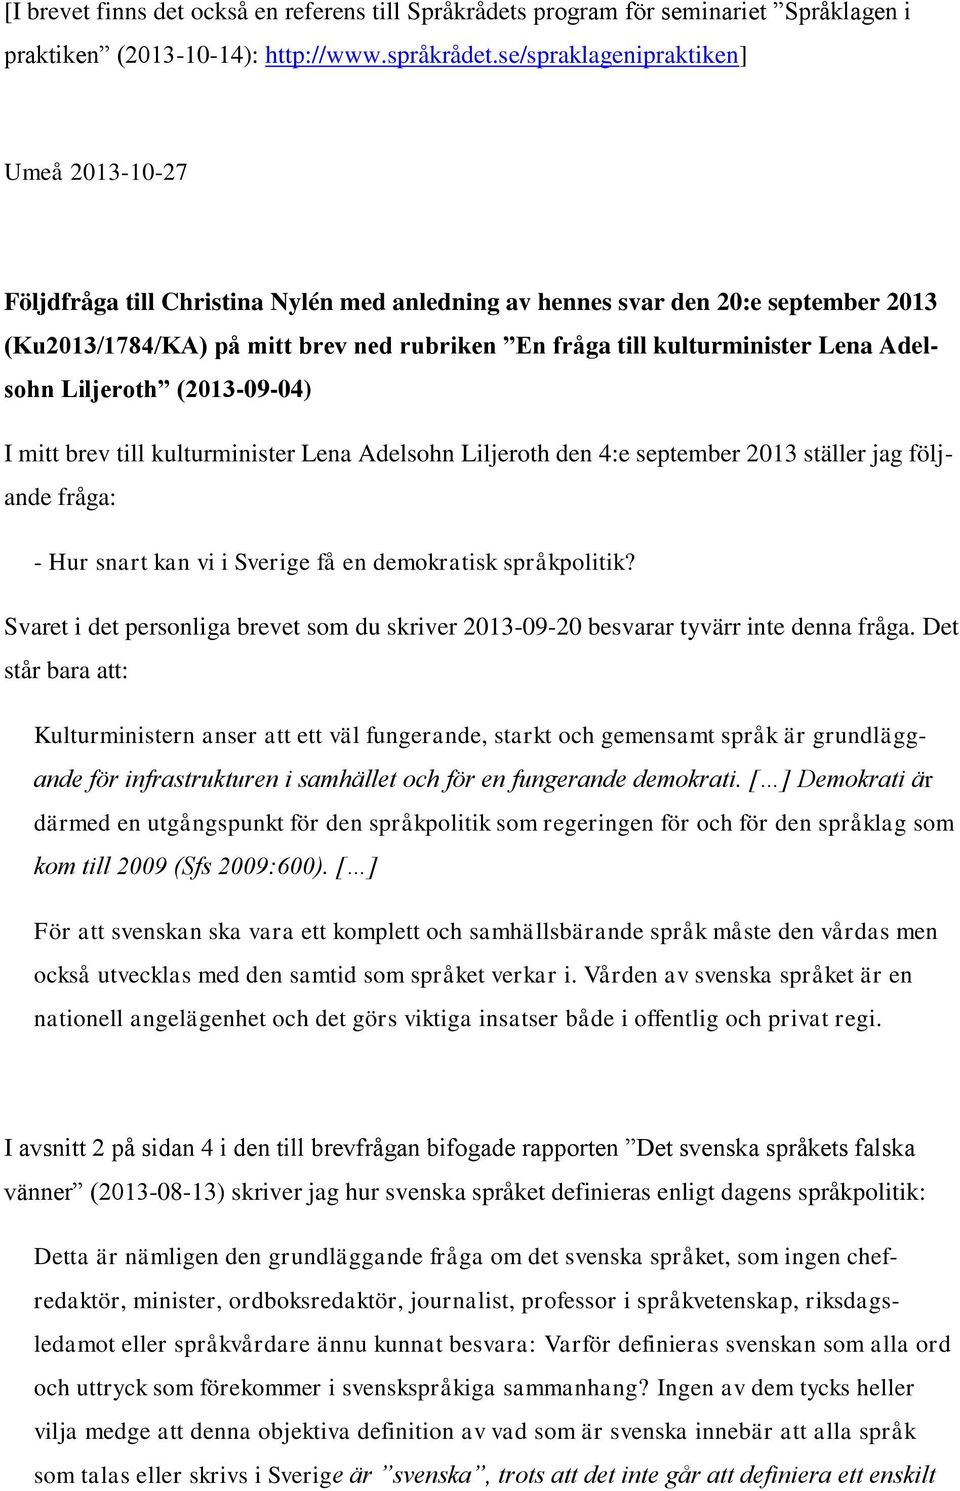 Lena Adelsohn Liljeroth (2013-09-04) I mitt brev till kulturminister Lena Adelsohn Liljeroth den 4:e september 2013 ställer jag följande fråga: - Hur snart kan vi i Sverige få en demokratisk